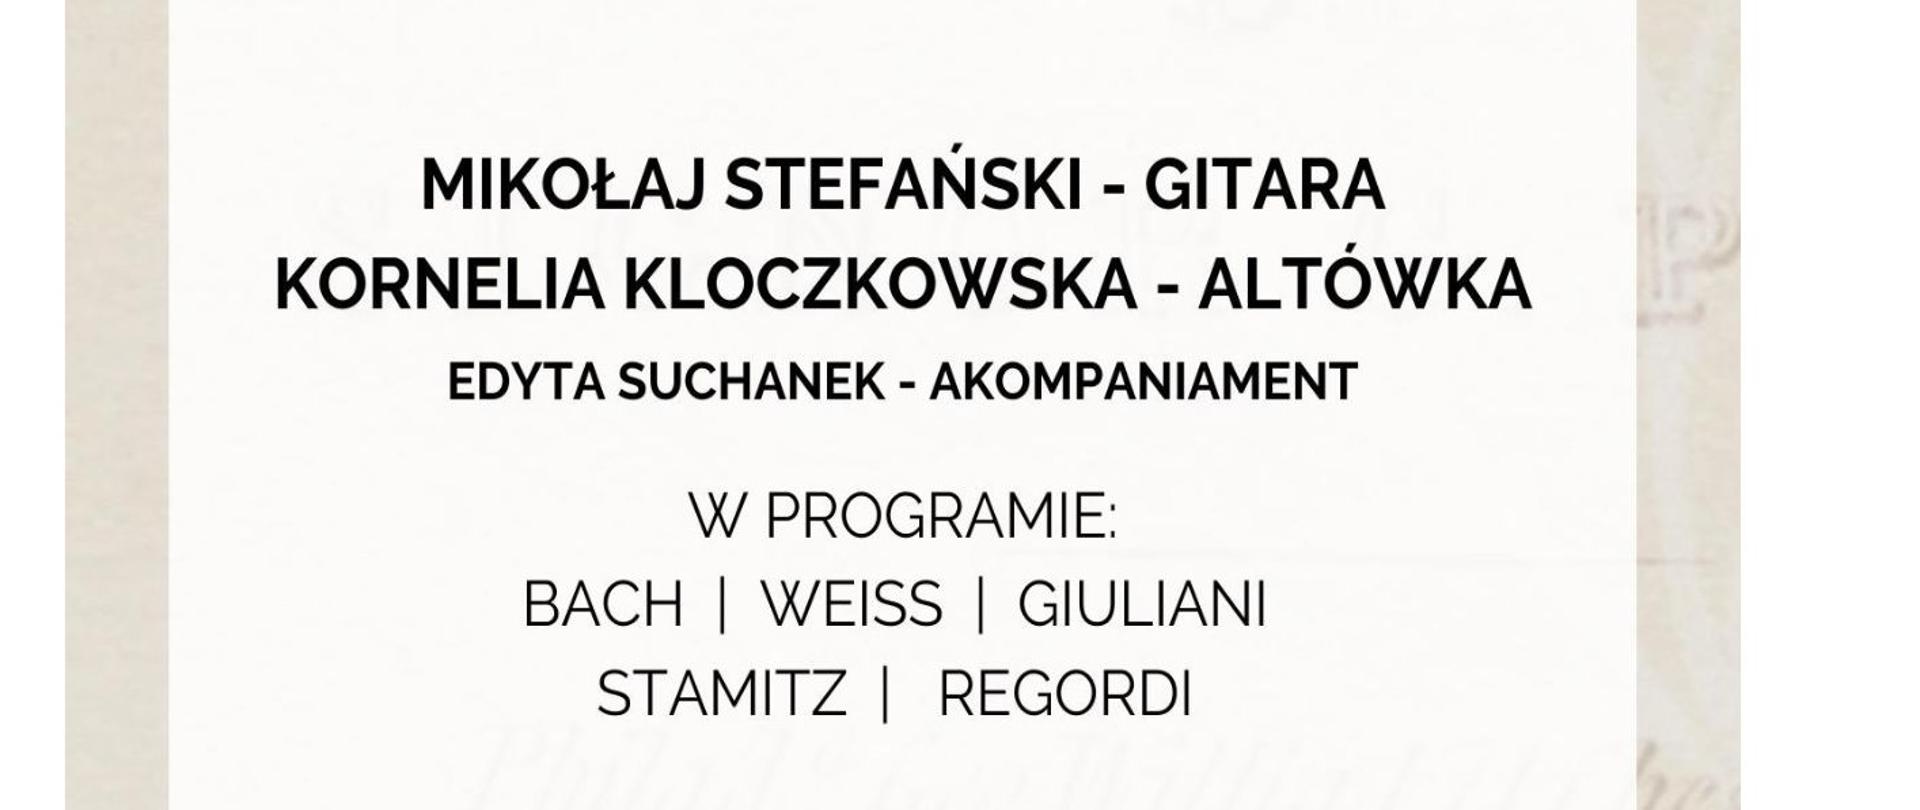 Plakat informujący o recitalu dyplomantów Mikołaja Stefańskiego i Kornelii Koczkowskiej. który odbędzie się 15 maja 2023 o godz. 18.00
akompaniament Edyta Suchanek
W programie Bach, Weiss, Giuliani, Stamitz, Regordi